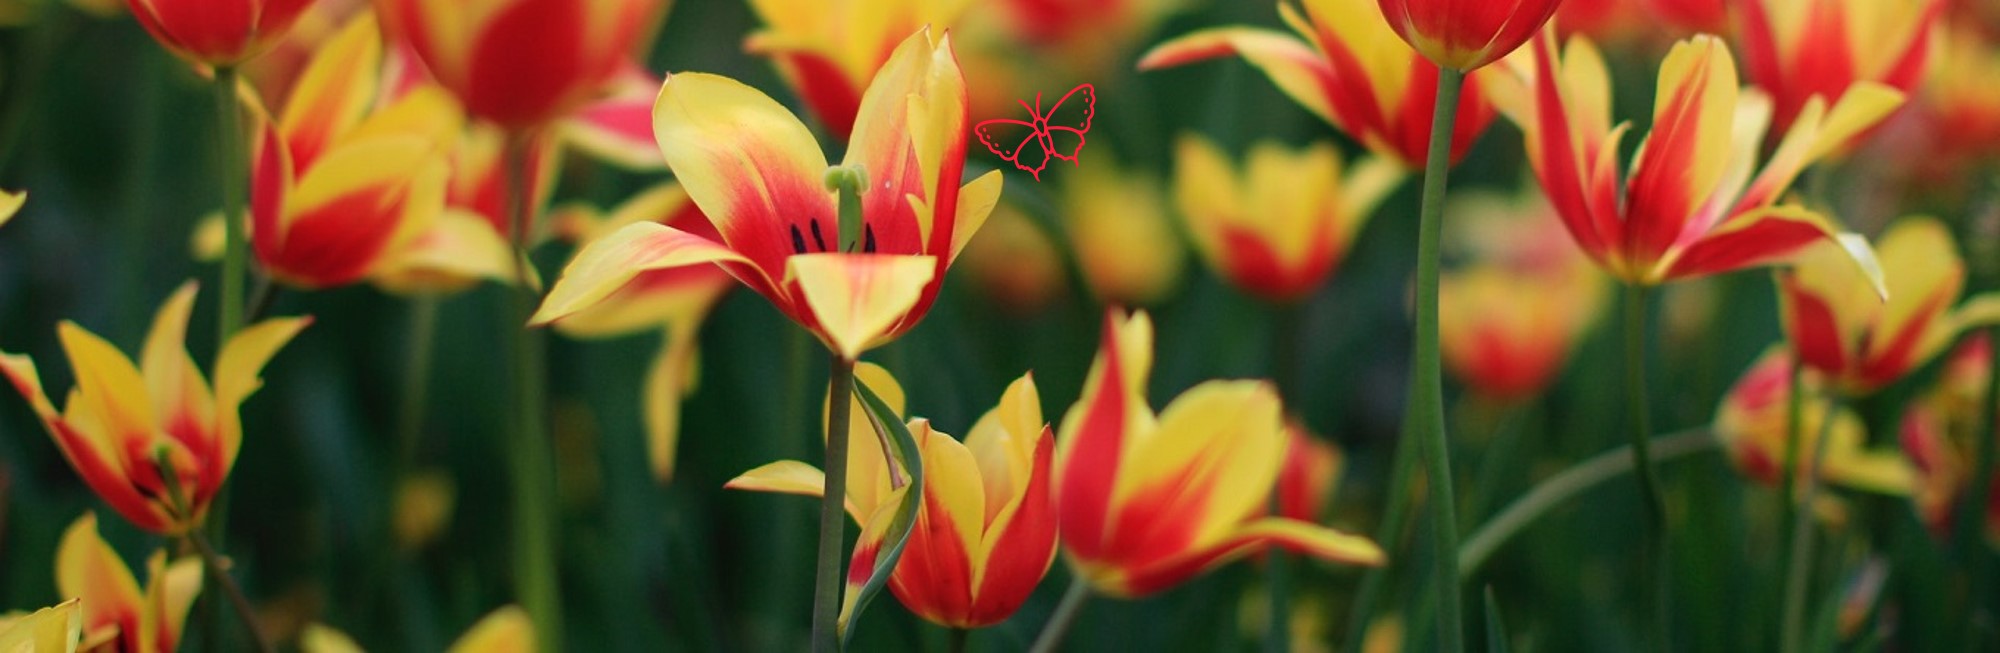 Tulpen mit Schmetterling